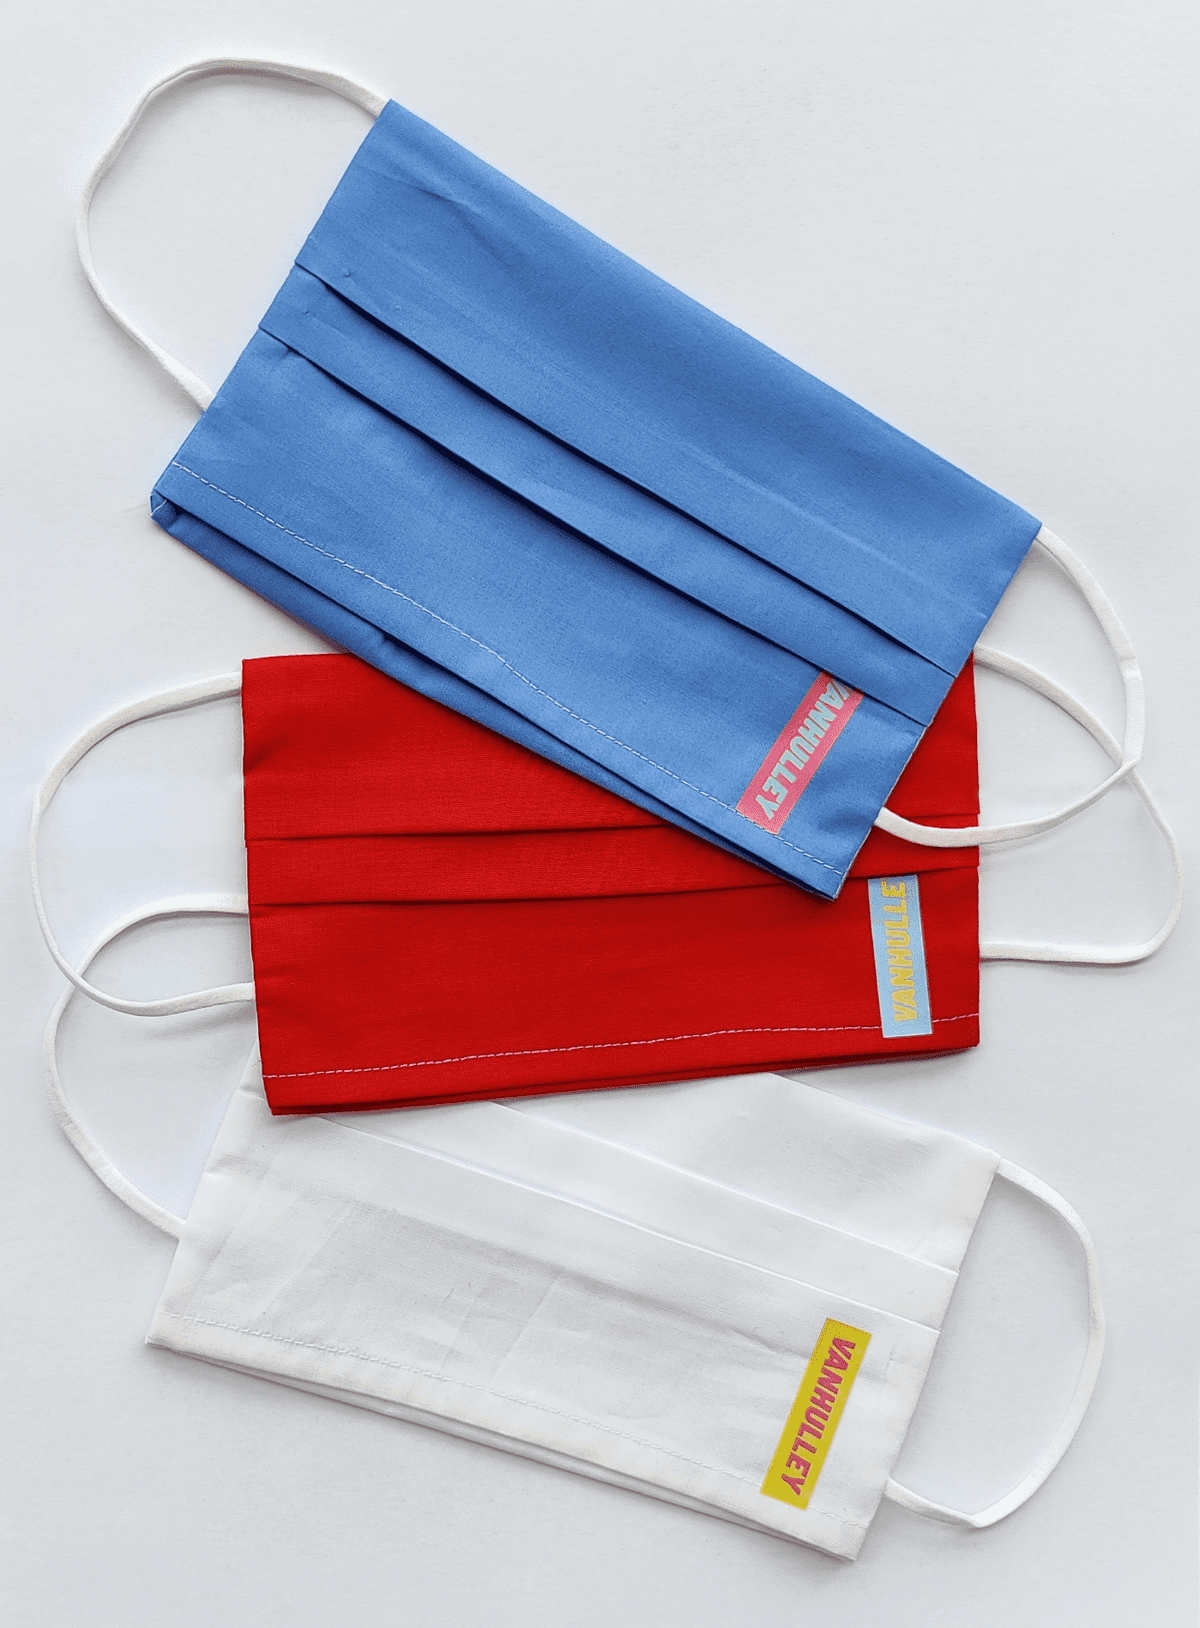 Drie mondkapjes in blauw, rood en wit, gemaakt door Gronings naaiatelier Vanhulley.